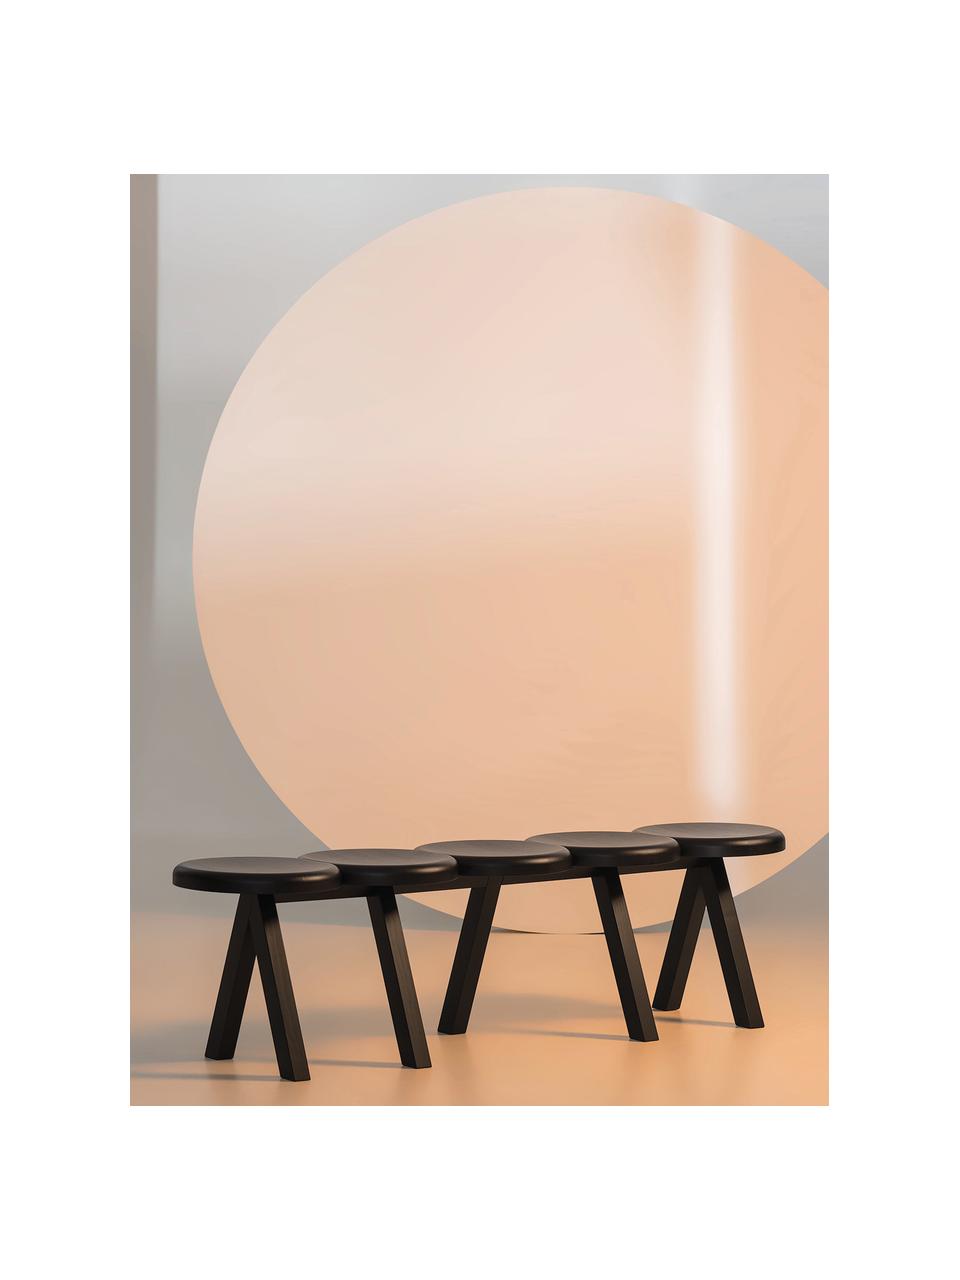 Sitzbank Millepiedi aus Eichenholz, Eichenholz, lackiert, Eichenholz, schwarz lackiert, B 155 x T 35 cm